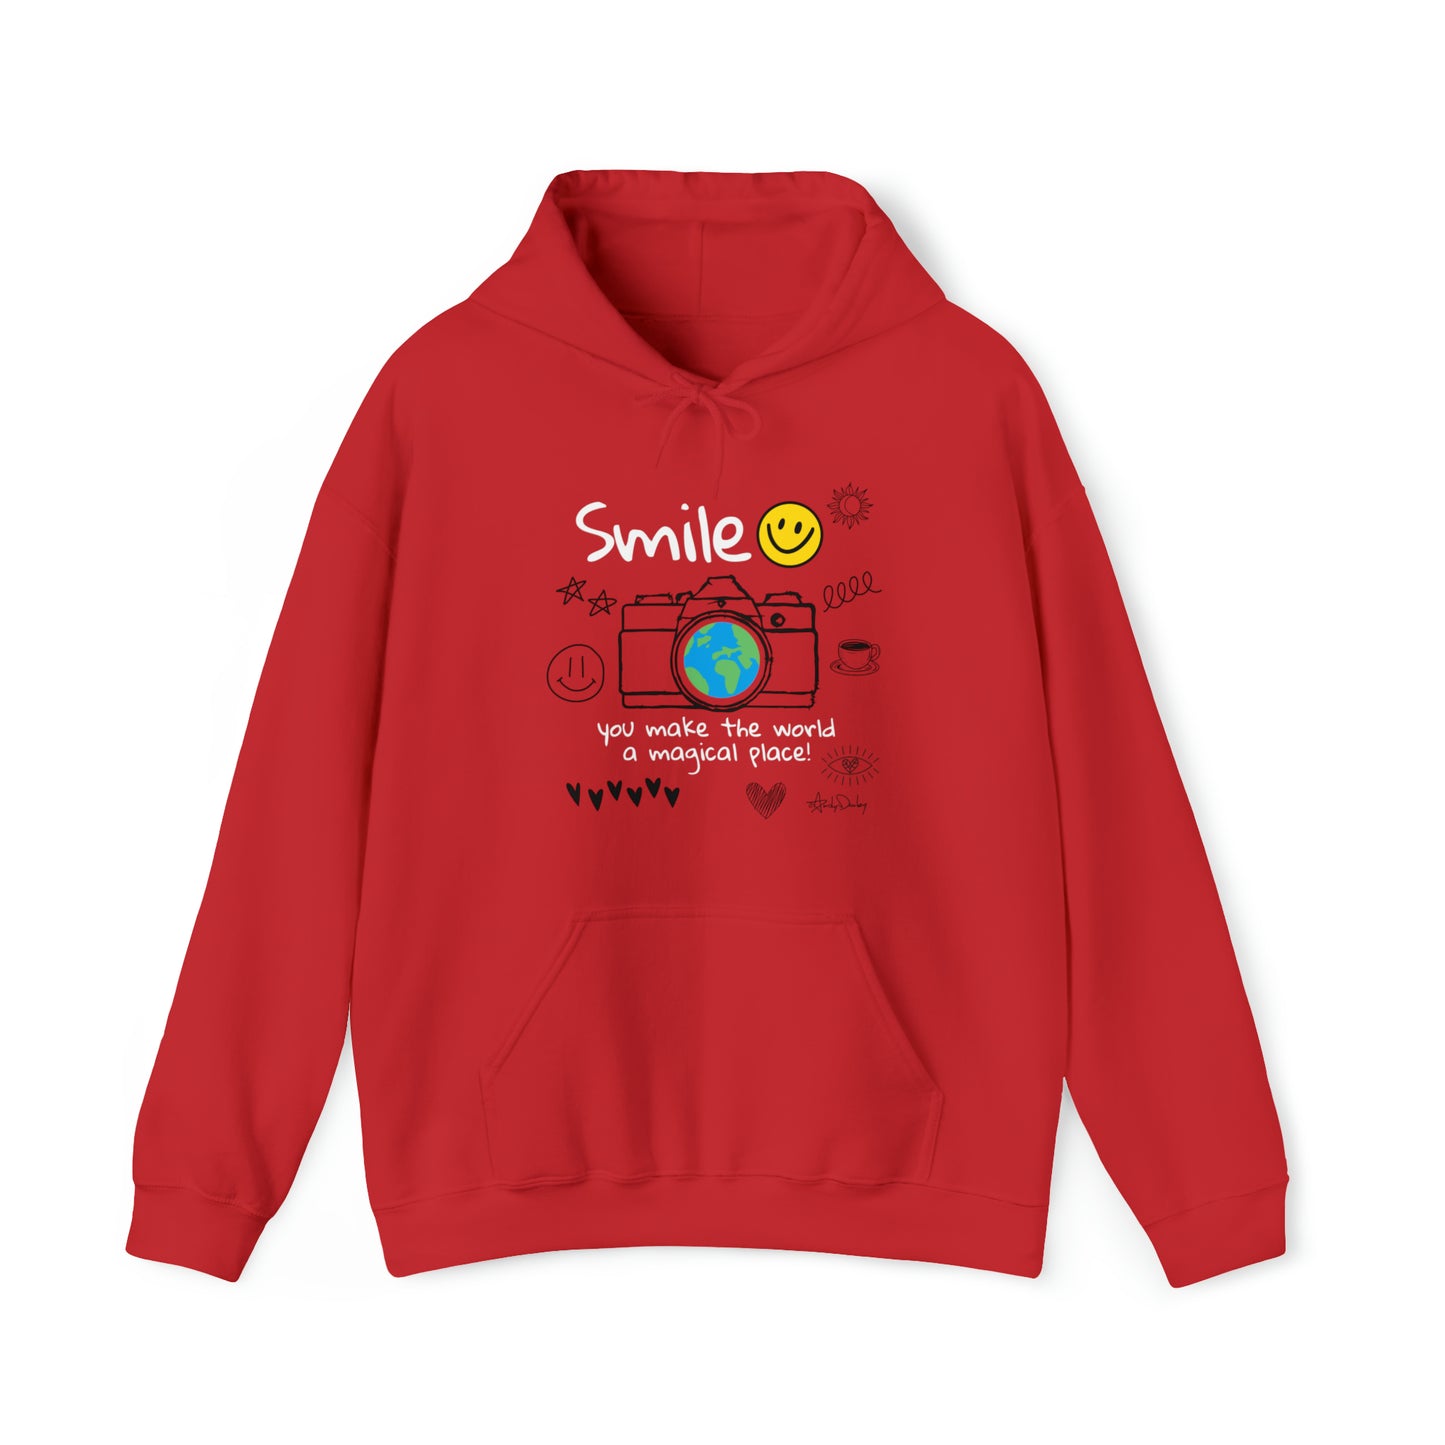 Smile - Hooded Sweatshirt!